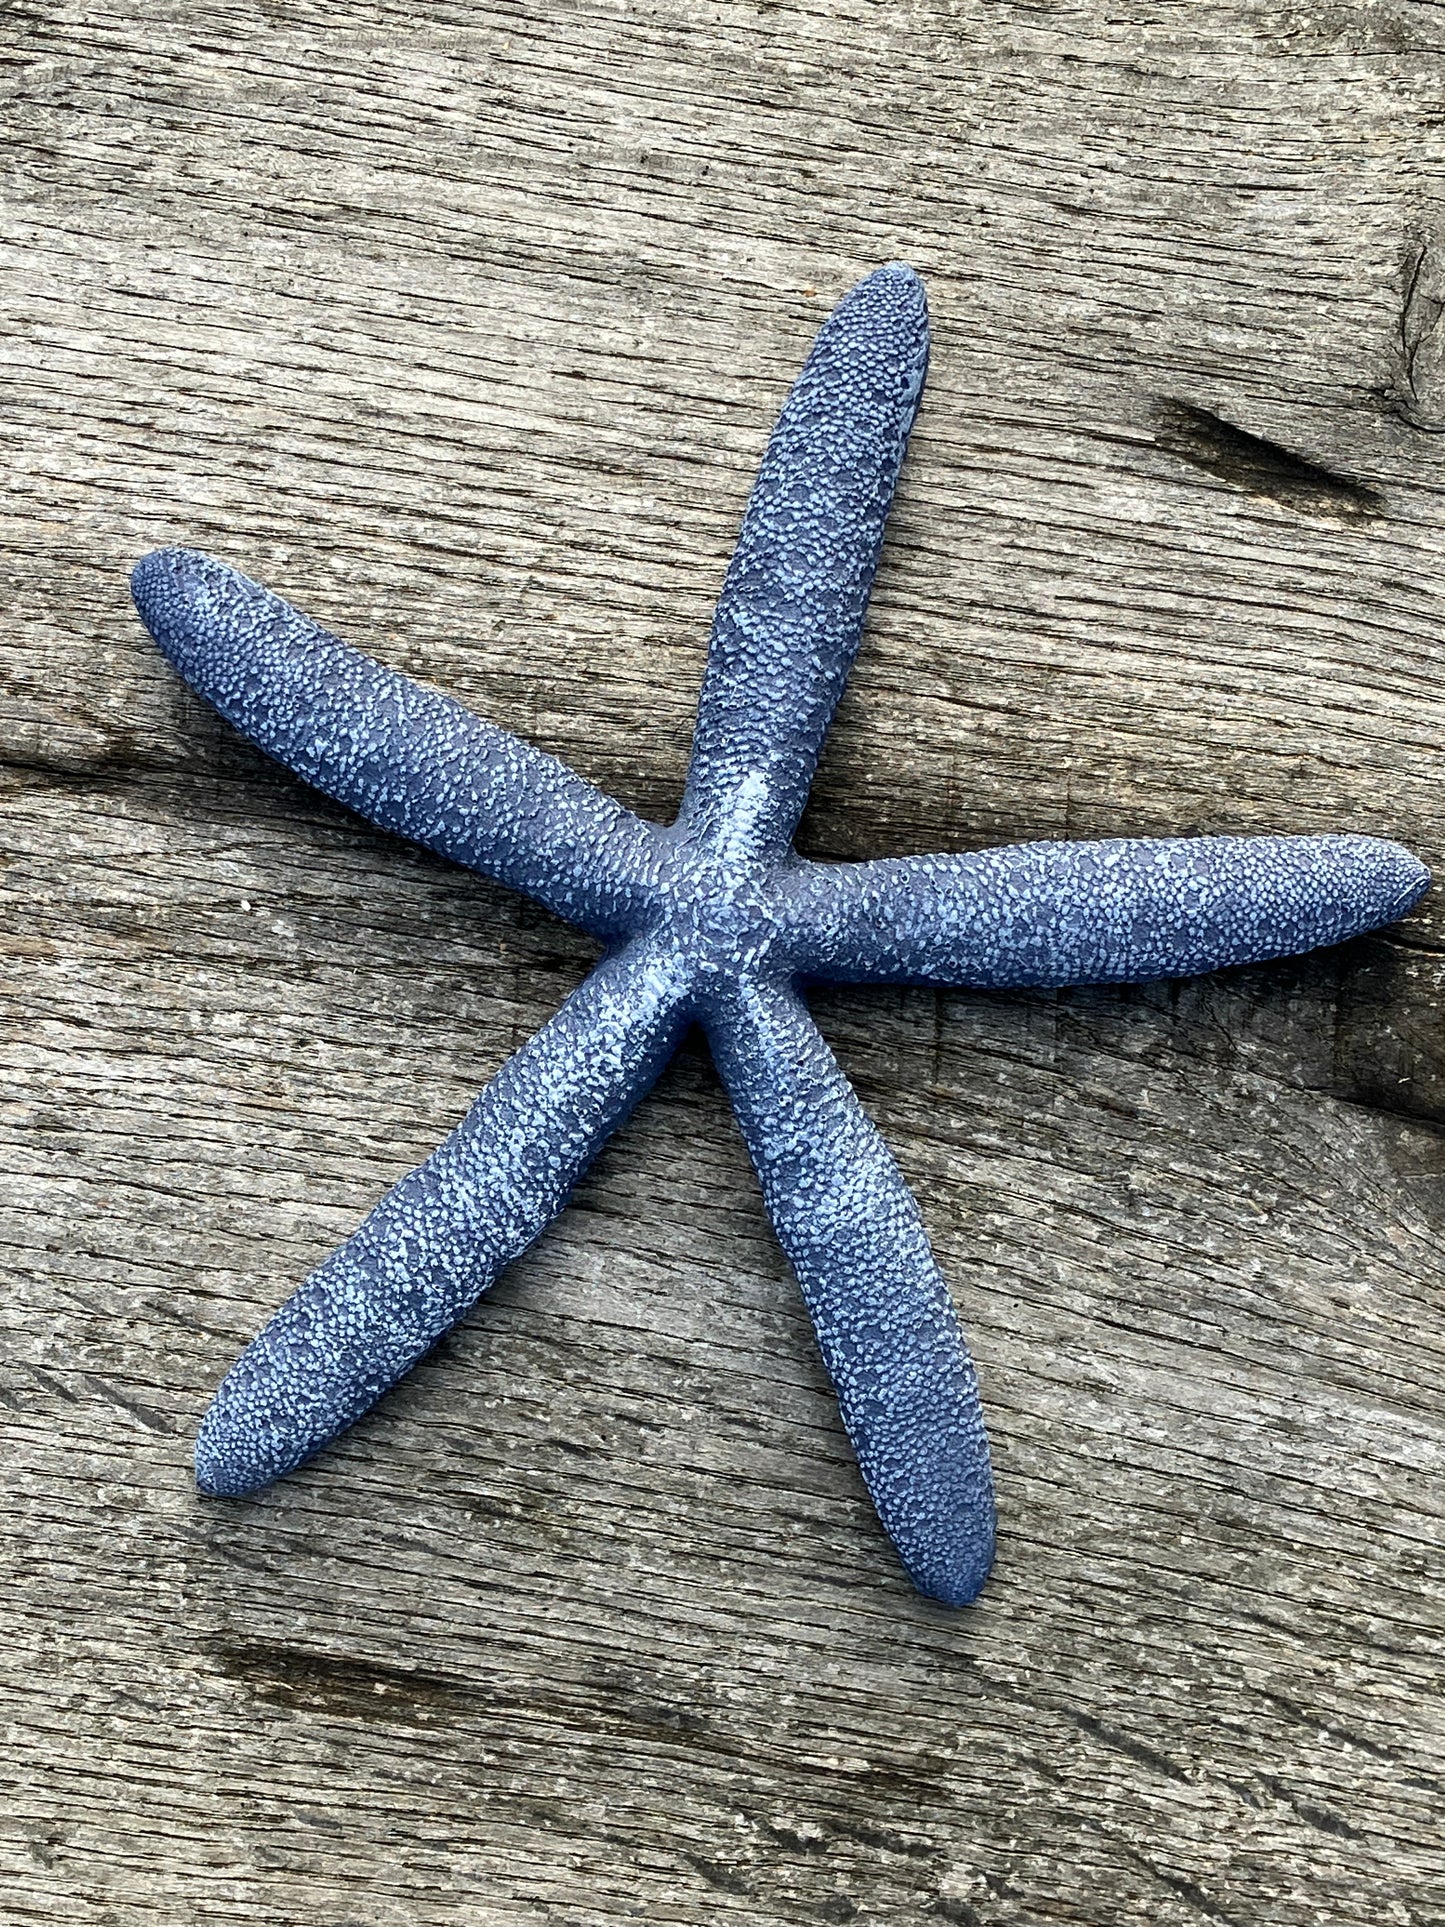 Resin starfish